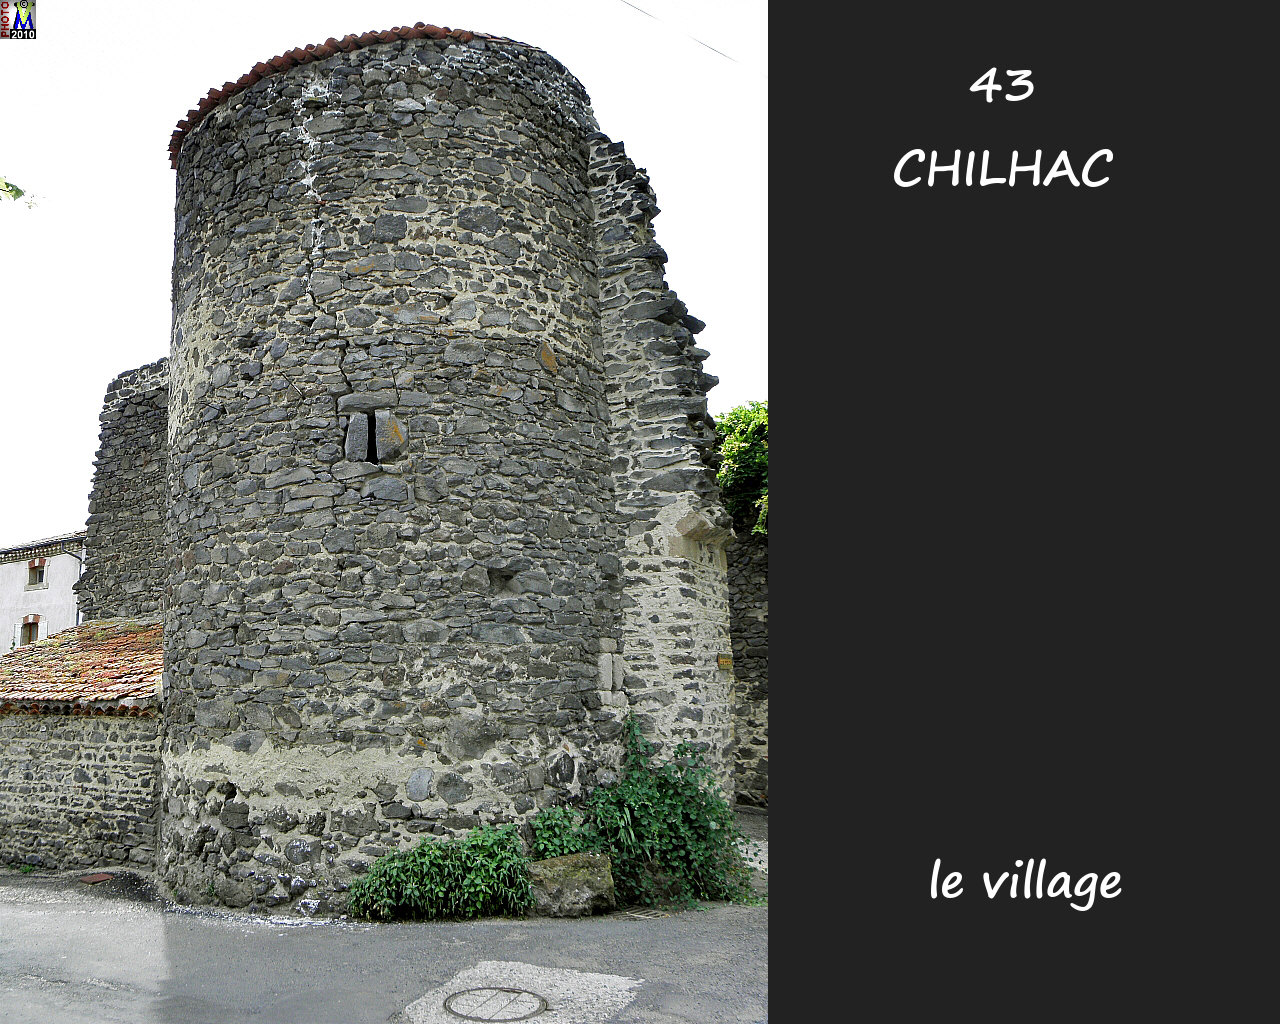 43CHILHAC_village_166.jpg